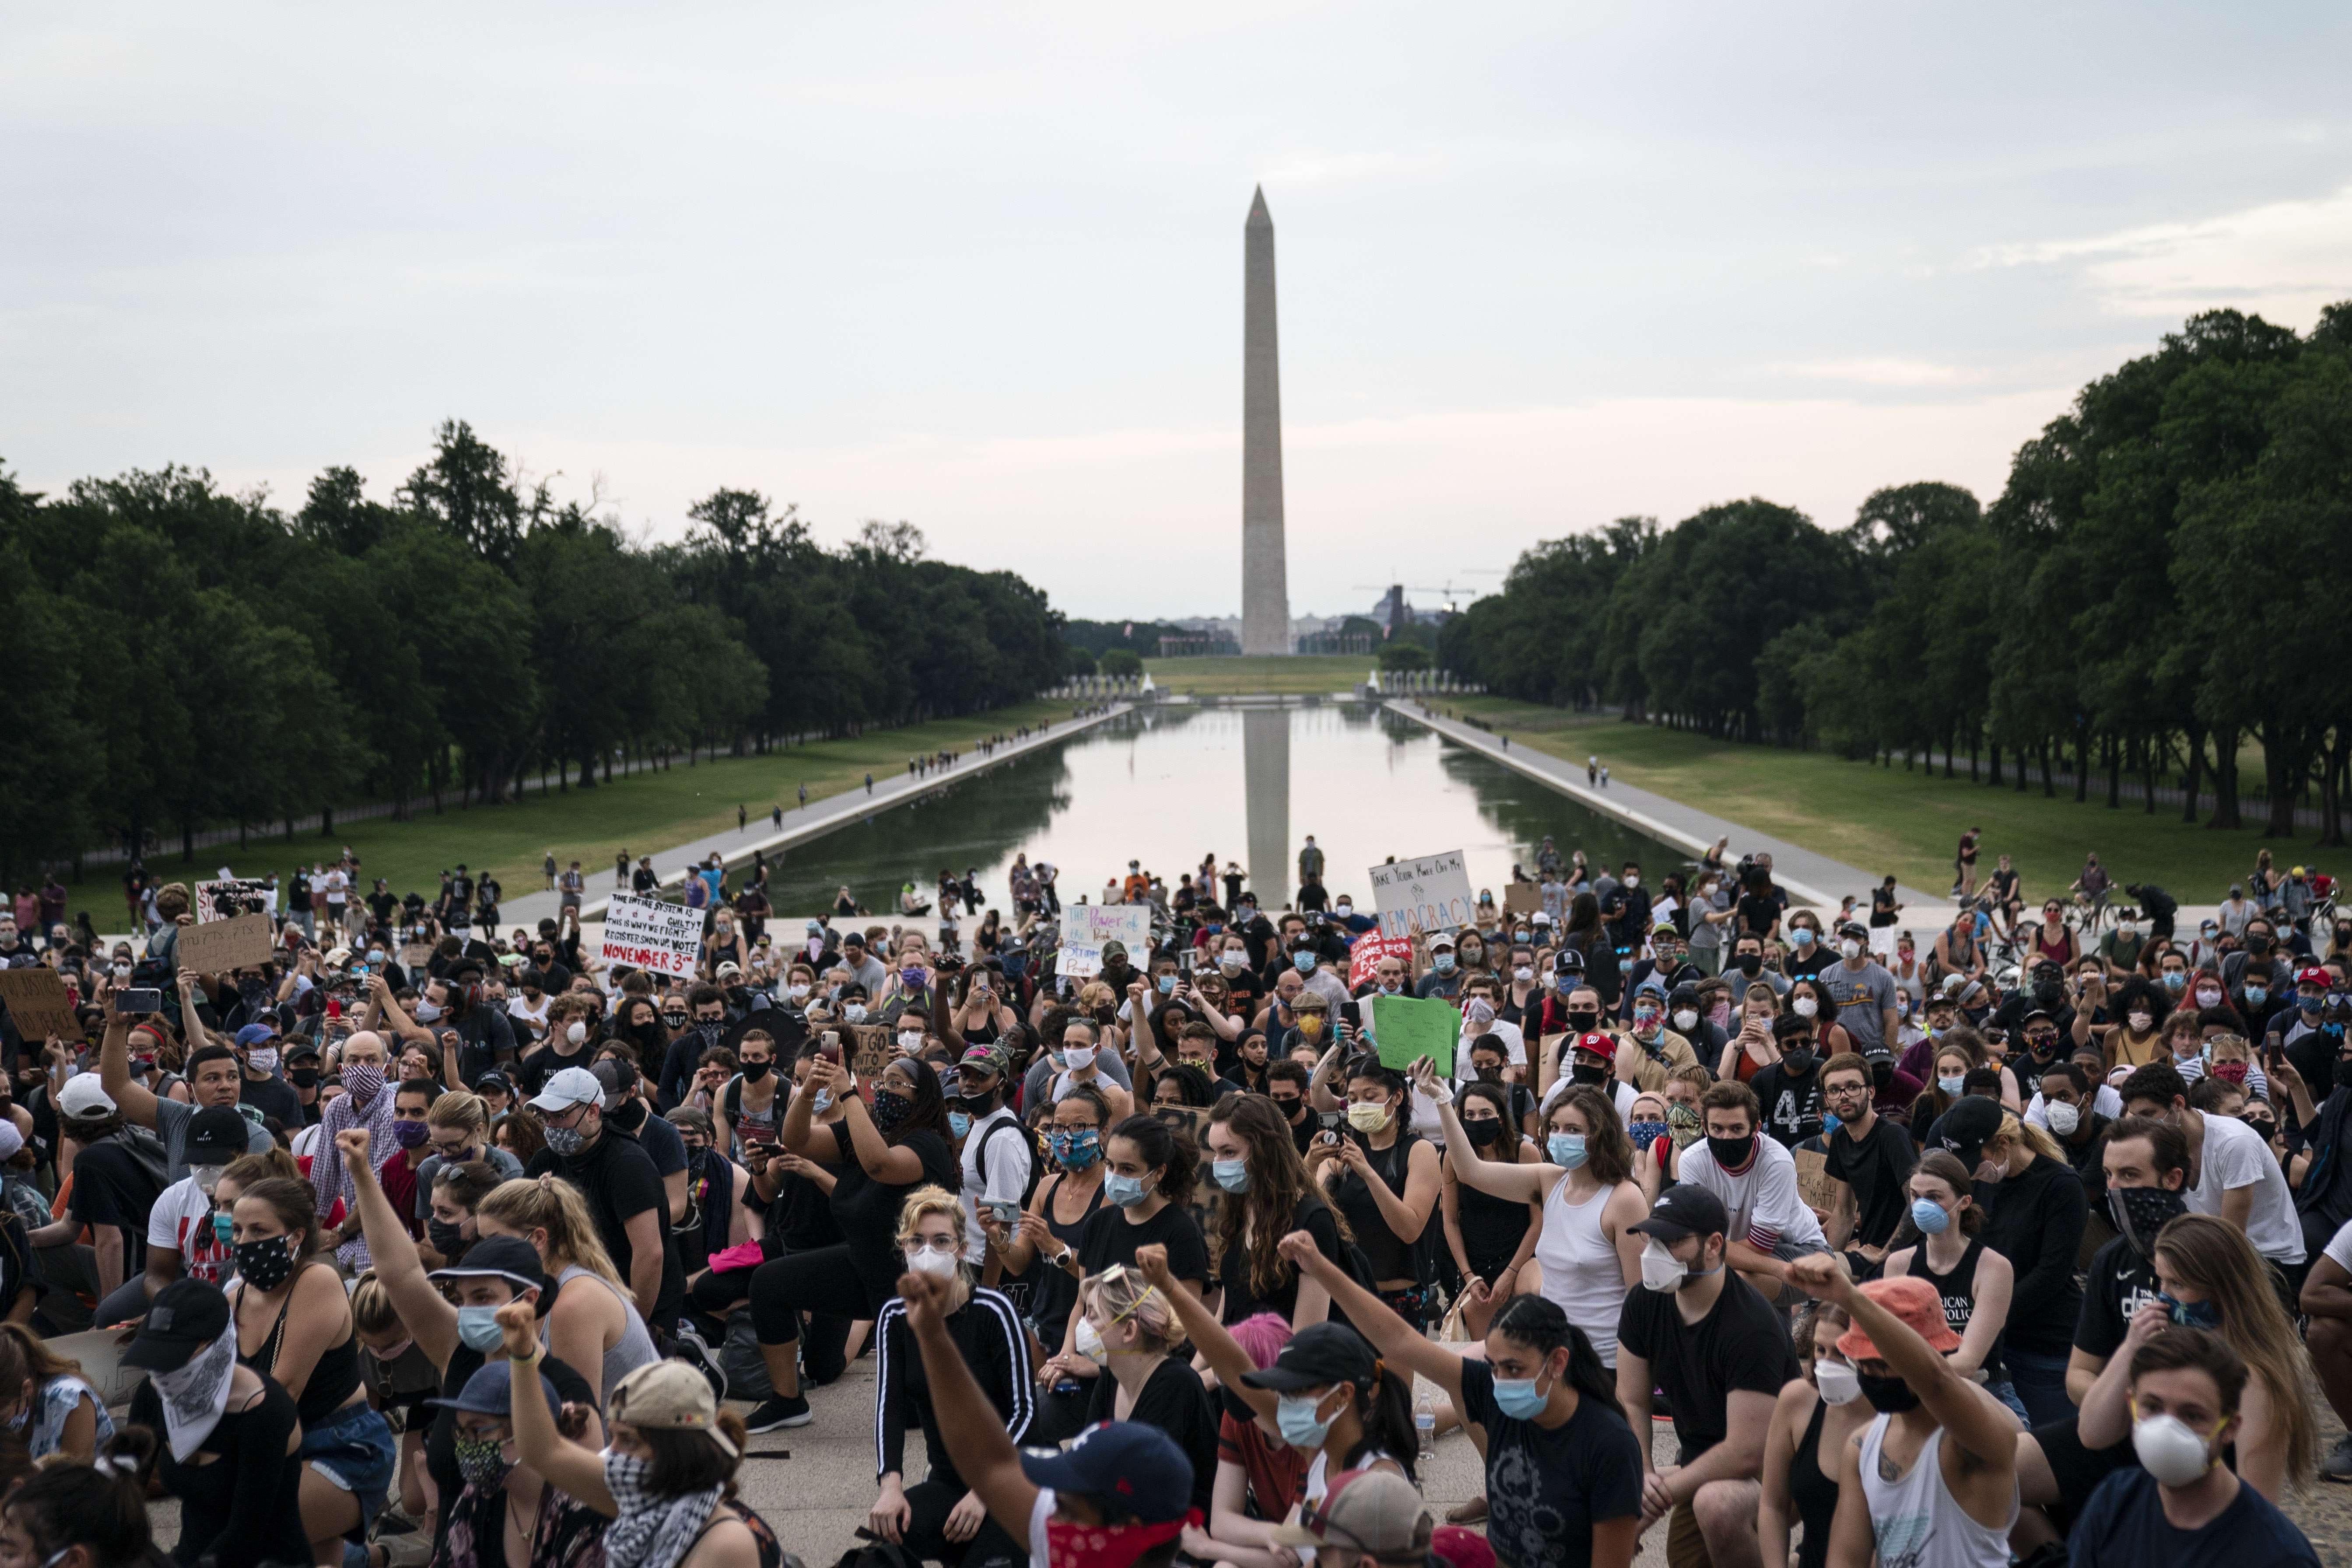 Los manifestantes se arrodillan en la base del Lincoln Memorial mientras protestan pacíficamente contra la brutalidad policial y la muerte de George Floyd, el 4 de junio de 2020 en Washington, DC. (Foto Prensa Libre: AFP).